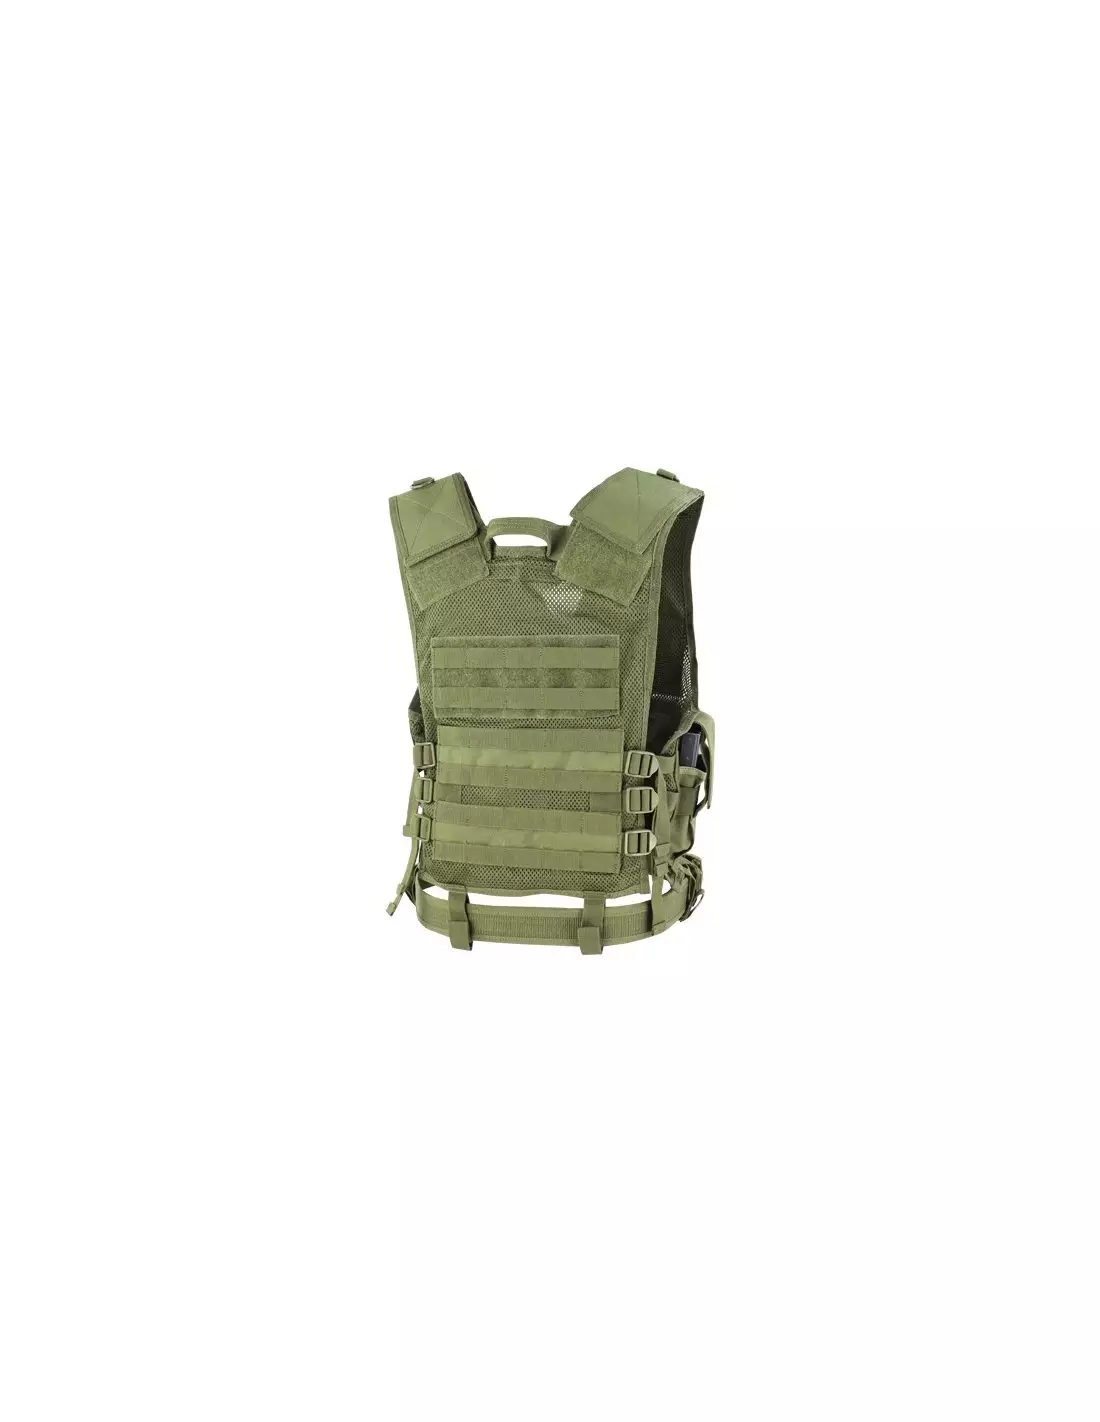 Condor Crossdraw Tactical Vest Medium/Large Olive Drab CV-001 